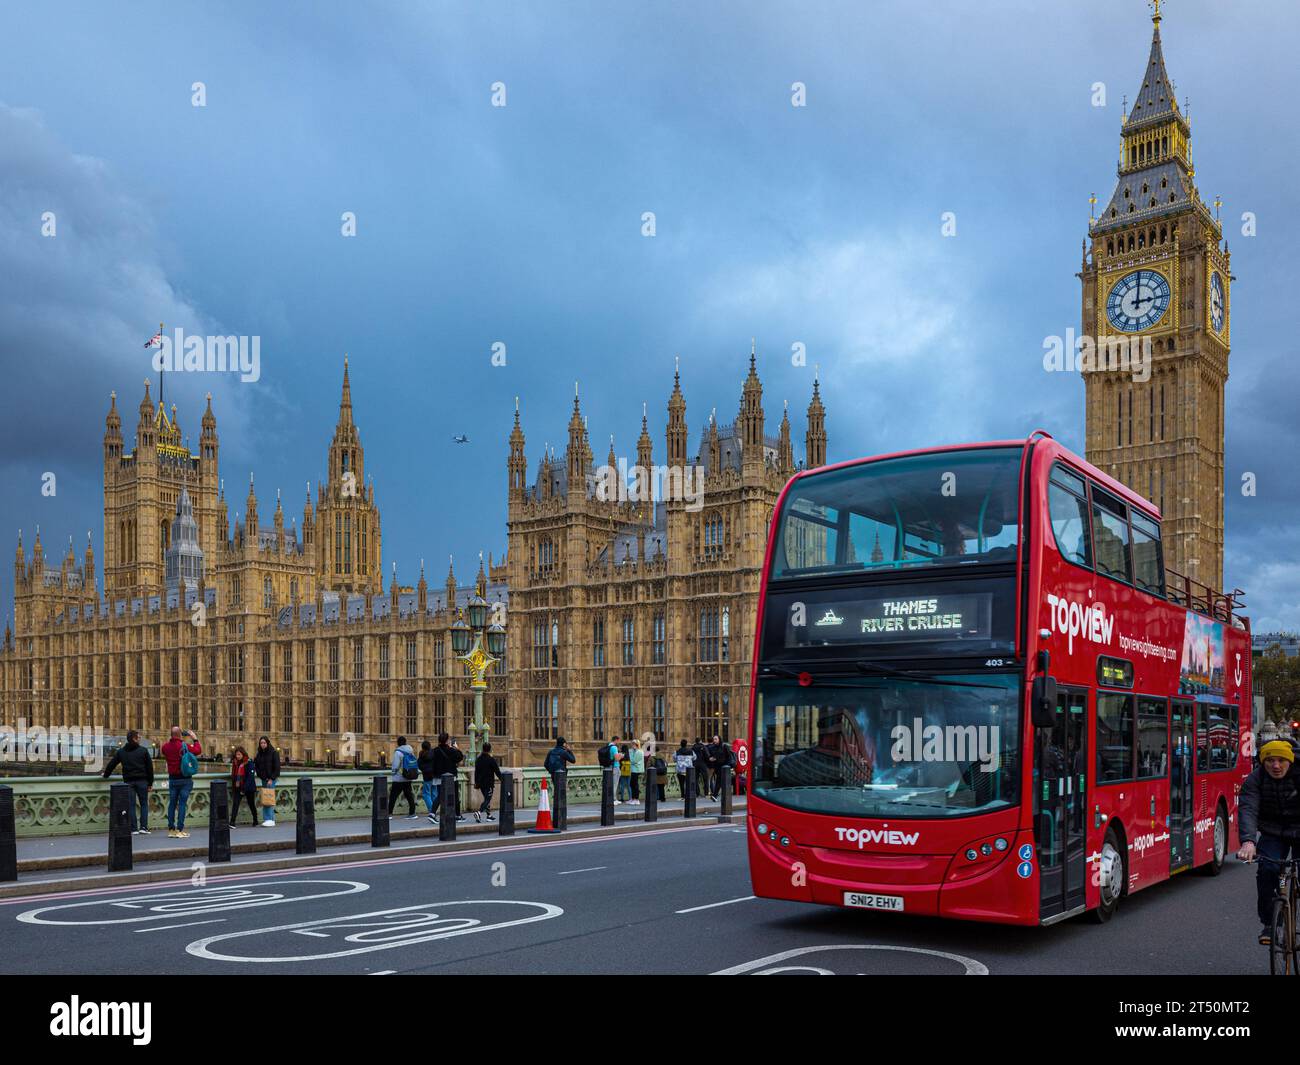 Londres Big Ben et les chambres du Parlement avec un bus rouge traversant Westminster Bridge. Palais londonien de Westminster. Londres Big Ben. Icône de Londres. Banque D'Images